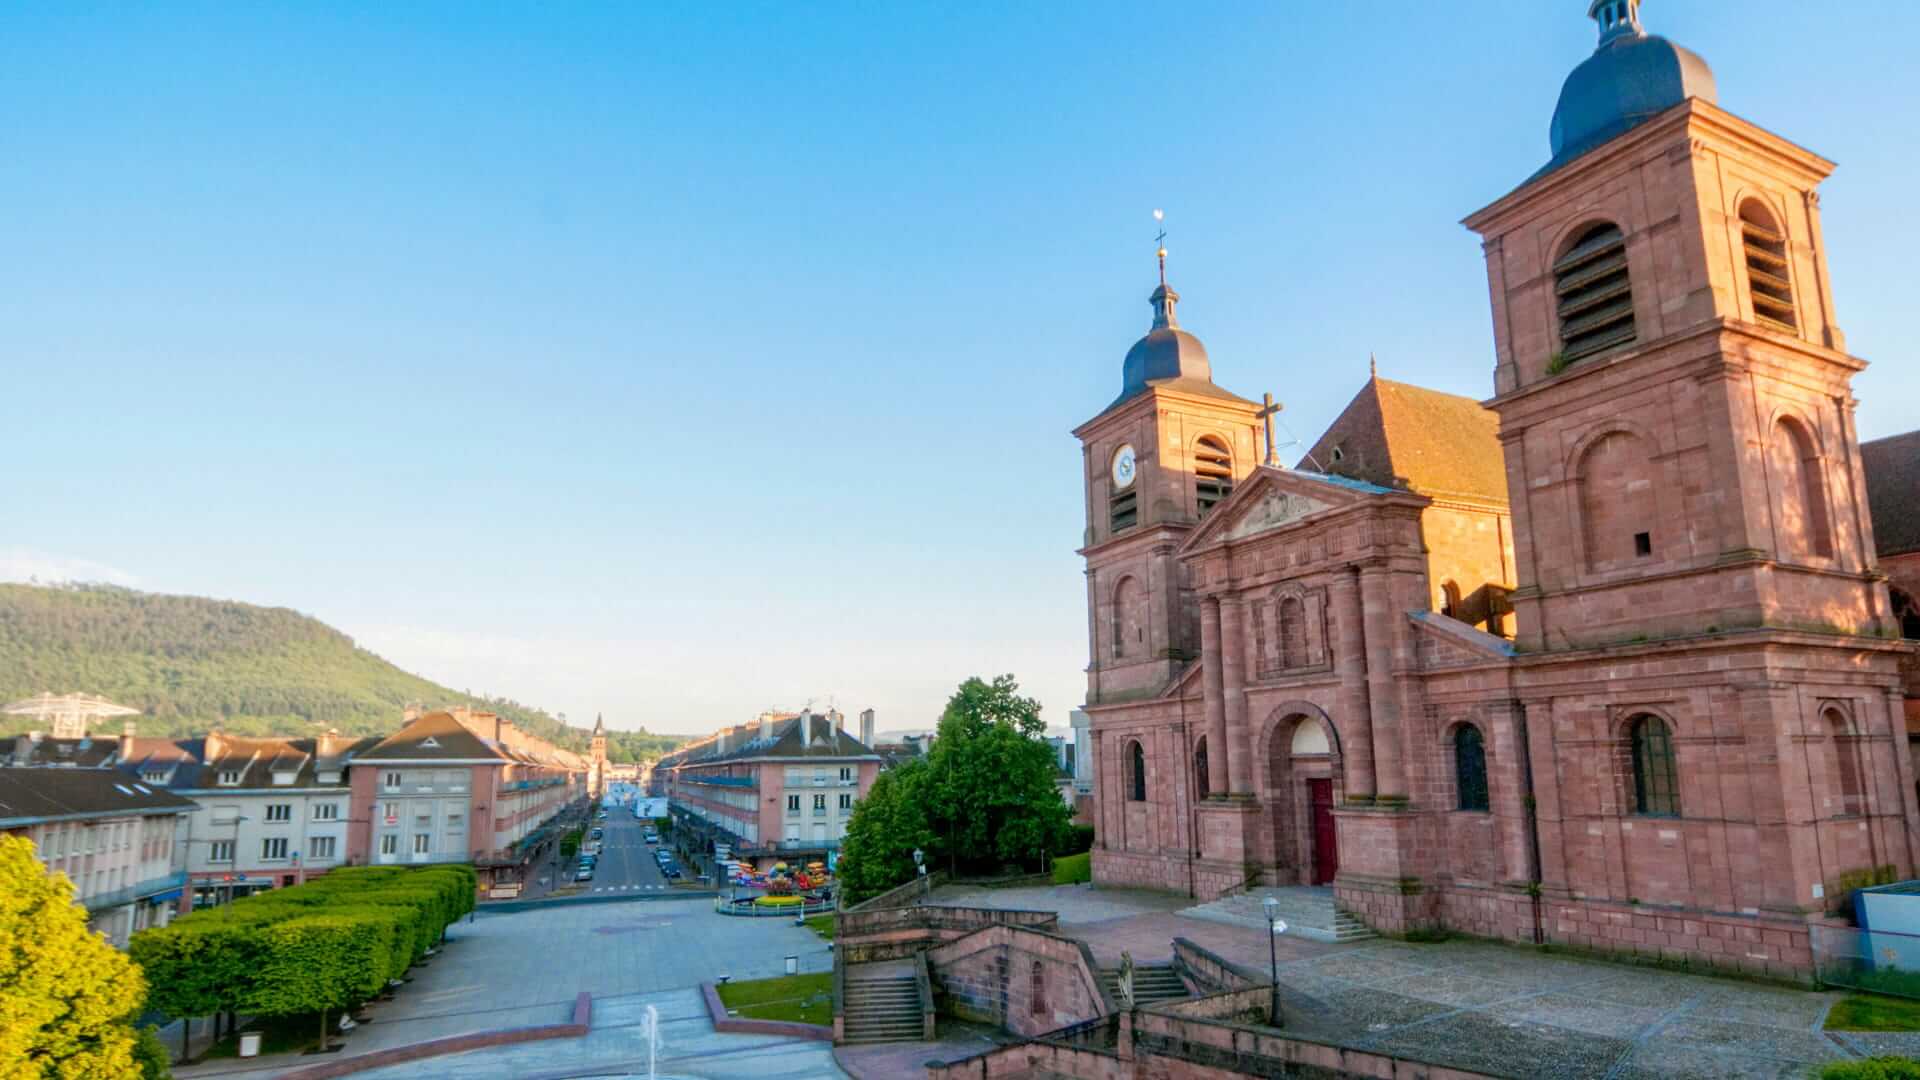 Saint-Dié-des-Vosges